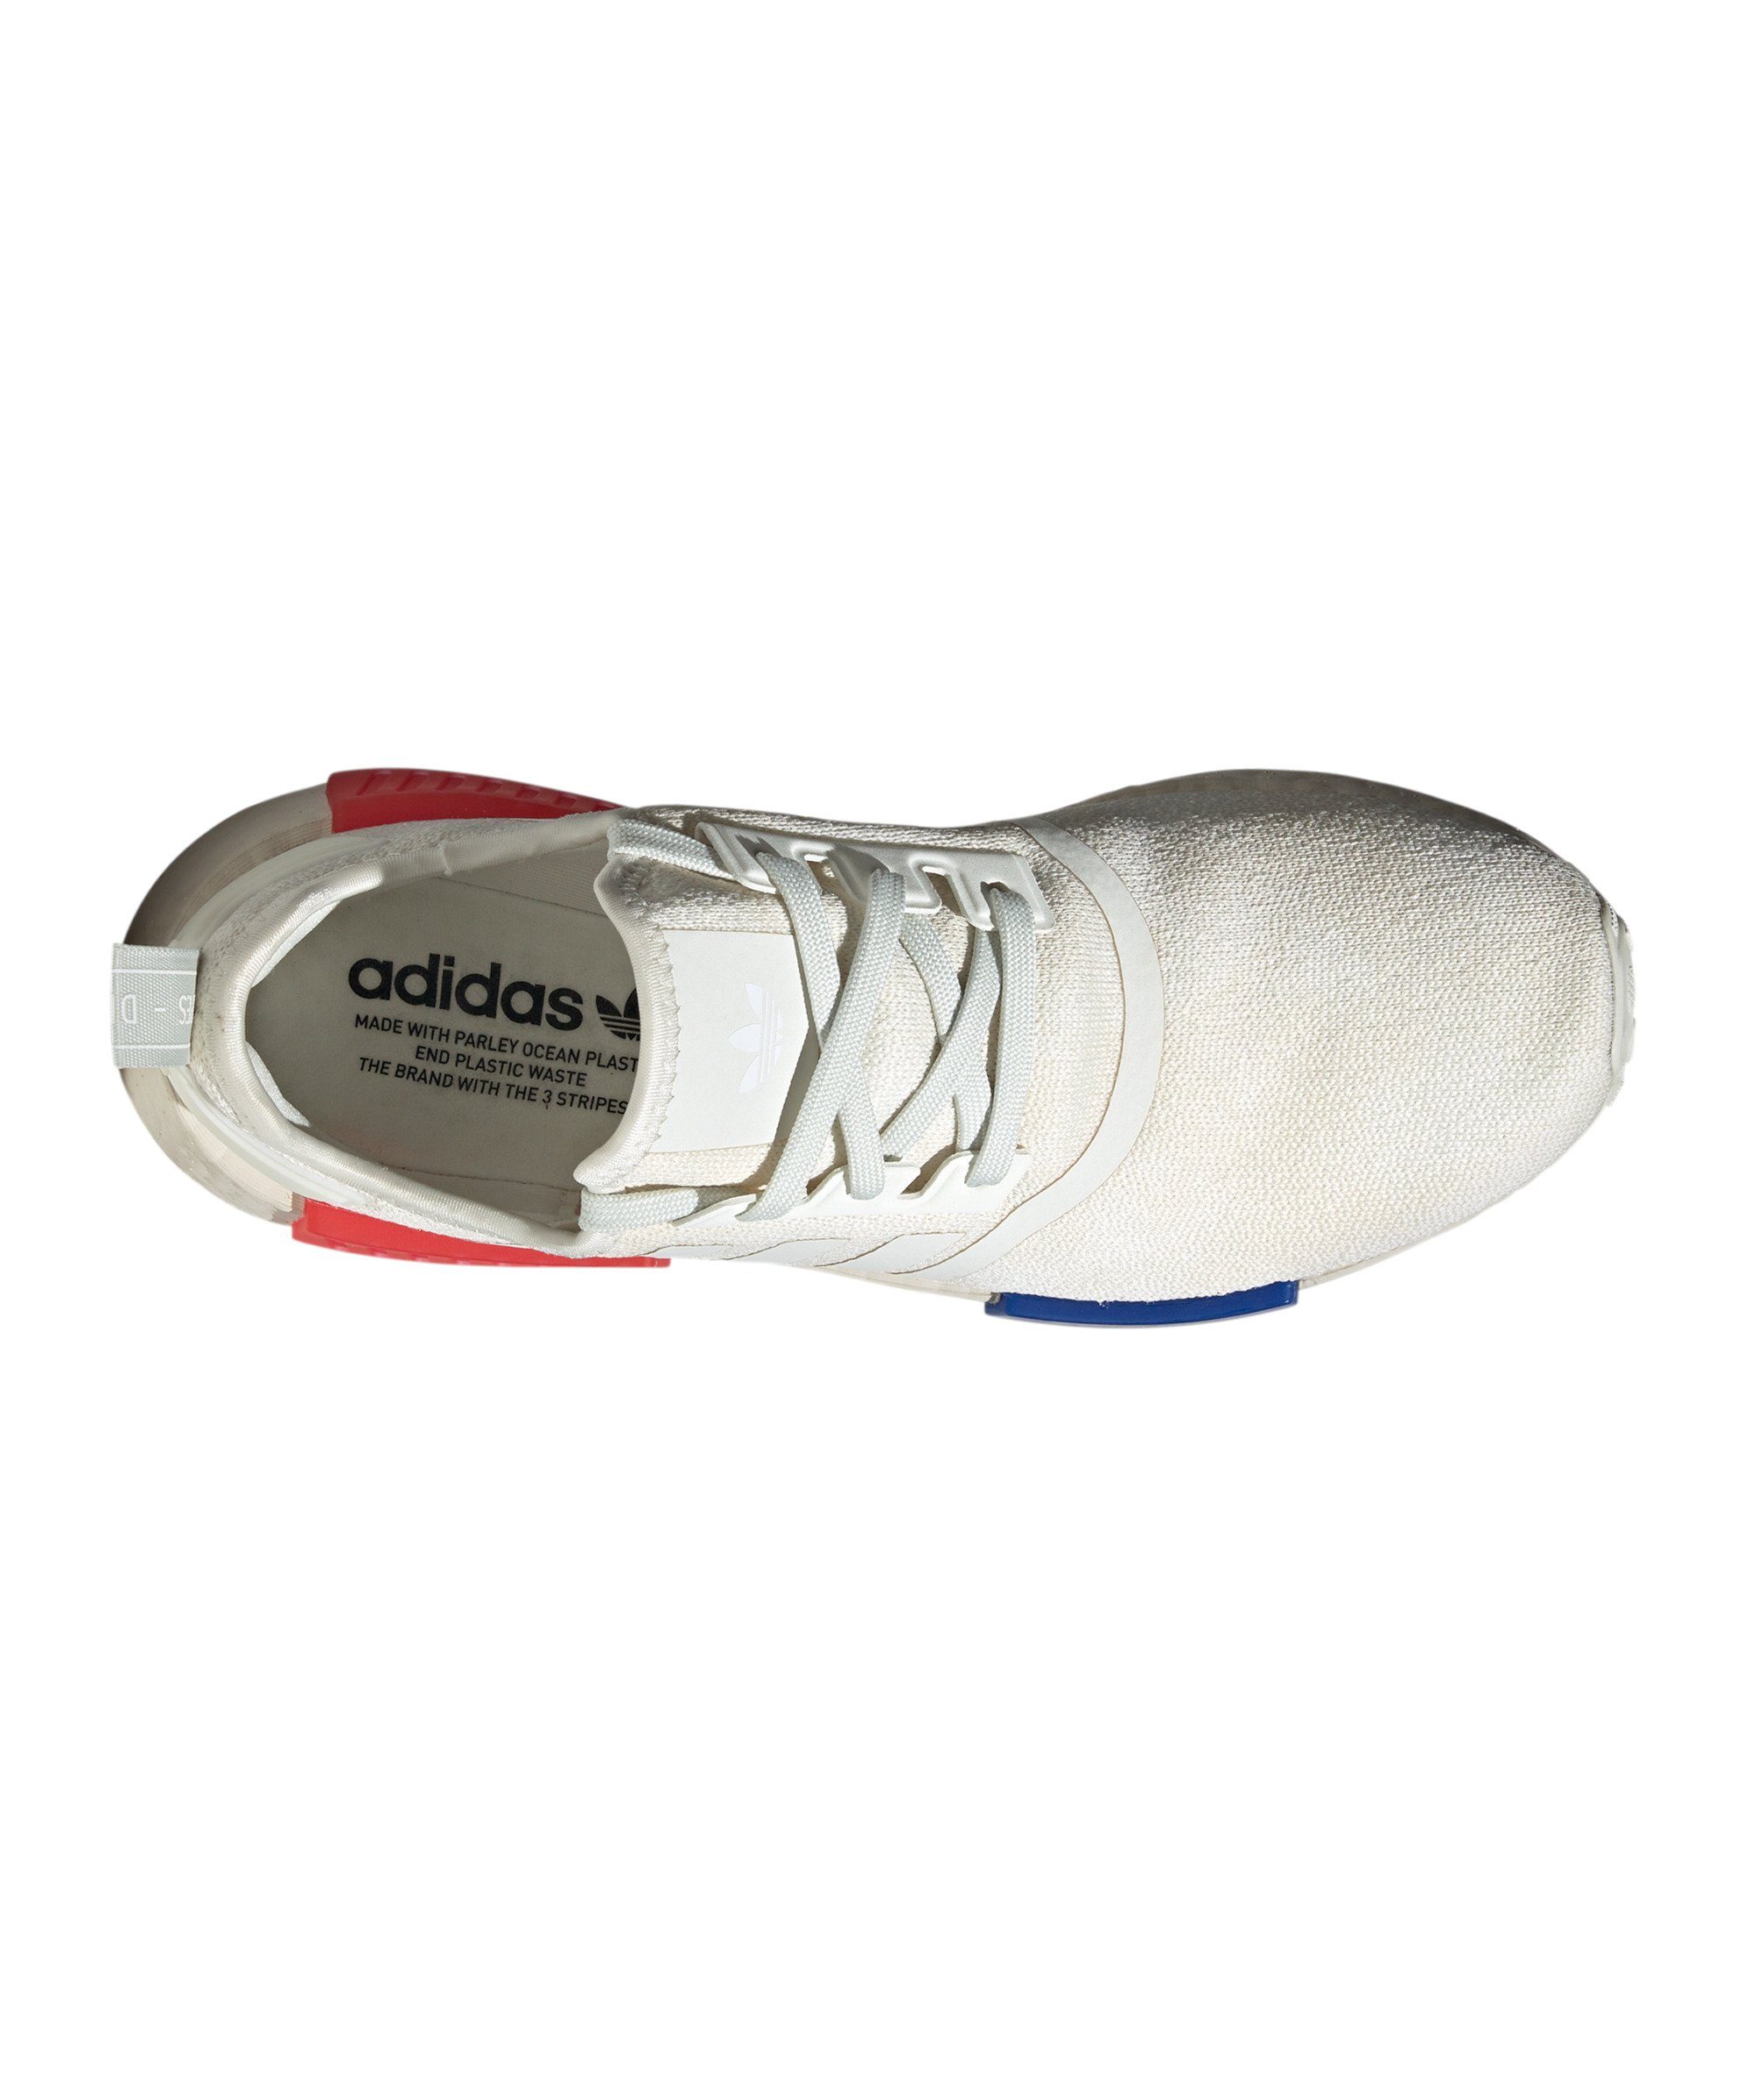 adidas Originals NMD_R1 weissrotblau Sneaker